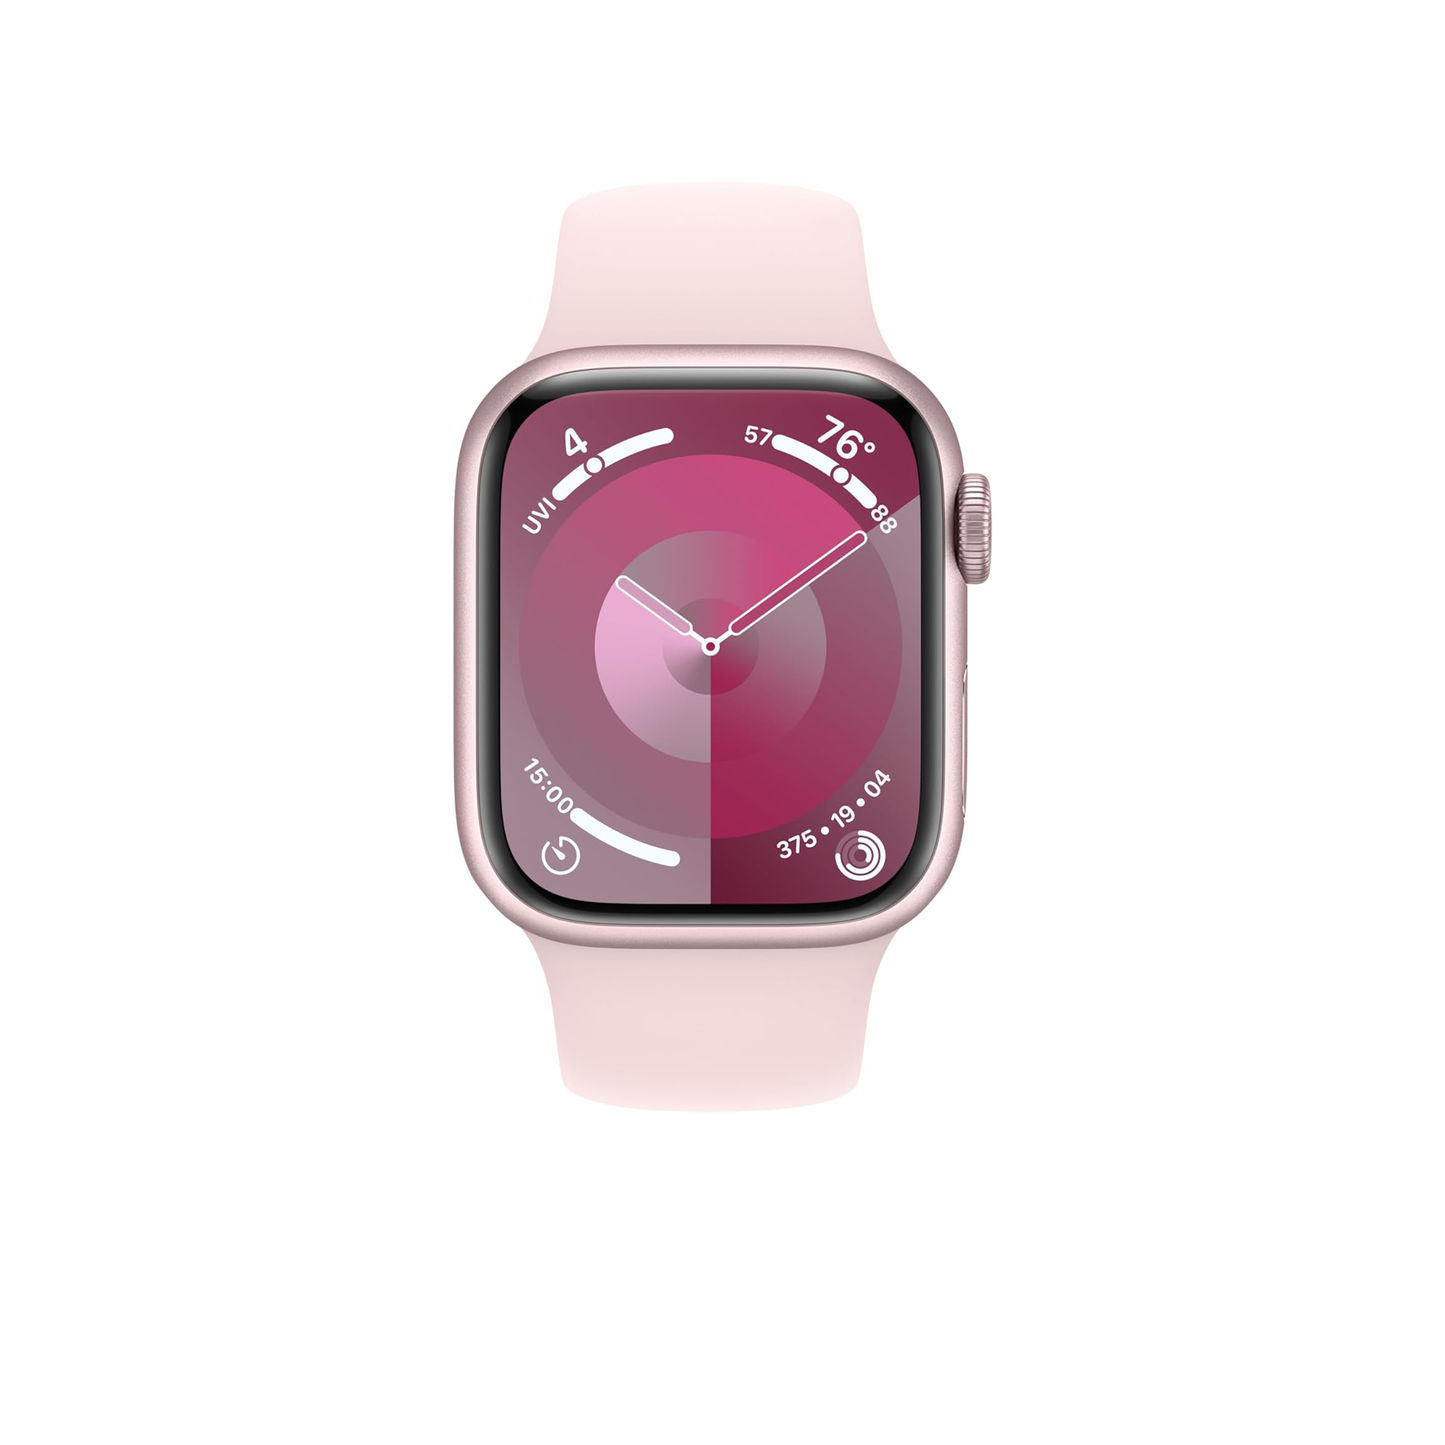 Apple Watch Series 9 [GPS + Cellular 41mm] ساعة ذكية مع هيكل من الألومنيوم الوردي وحزام رياضي وردي S/M. جهاز تتبع اللياقة البدنية، وتطبيقات أكسجين الدم وتخطيط القلب، وشاشة شبكية العين التي تعمل دائمًا (متجددة)